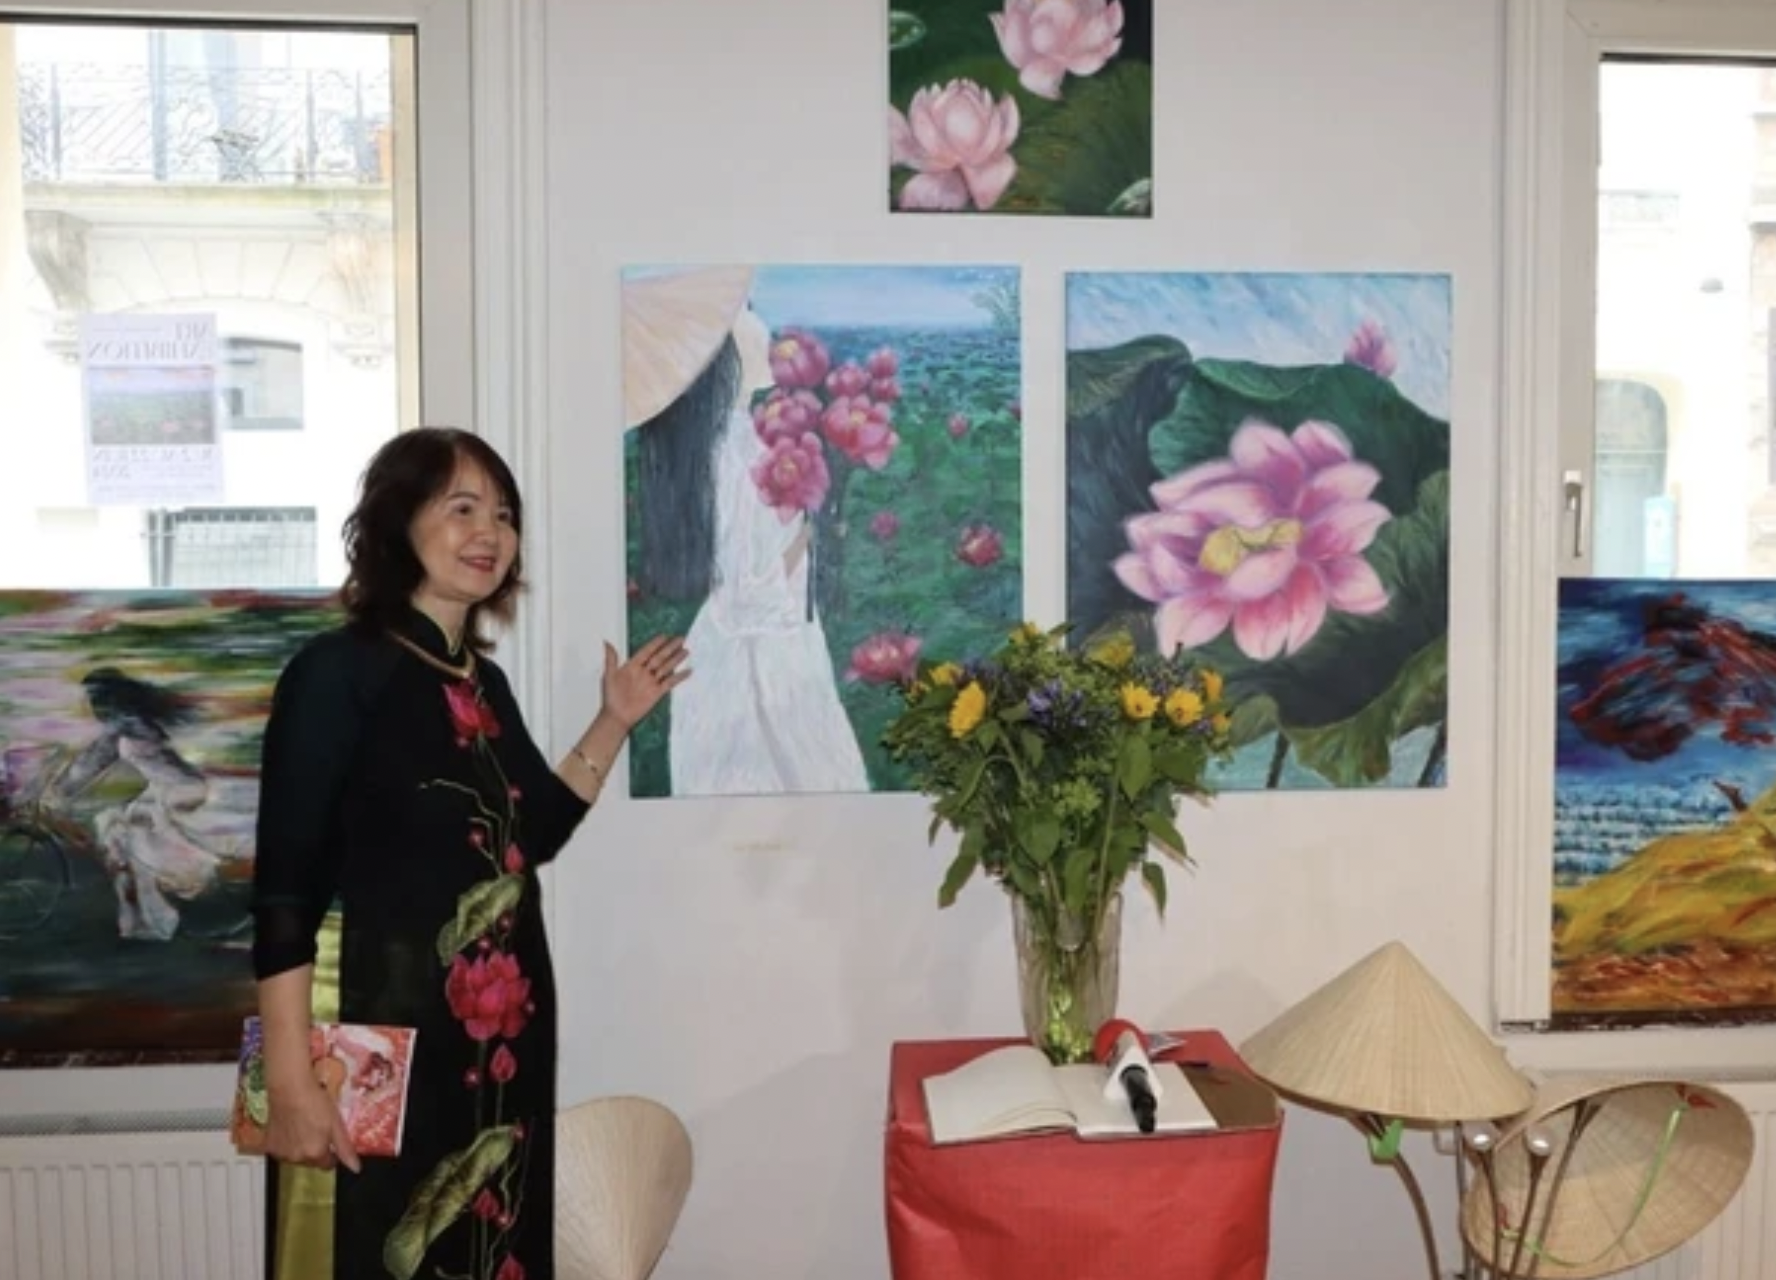 旅居比利时越南女画家通过画笔把对祖国的热爱倾注画卷之中。